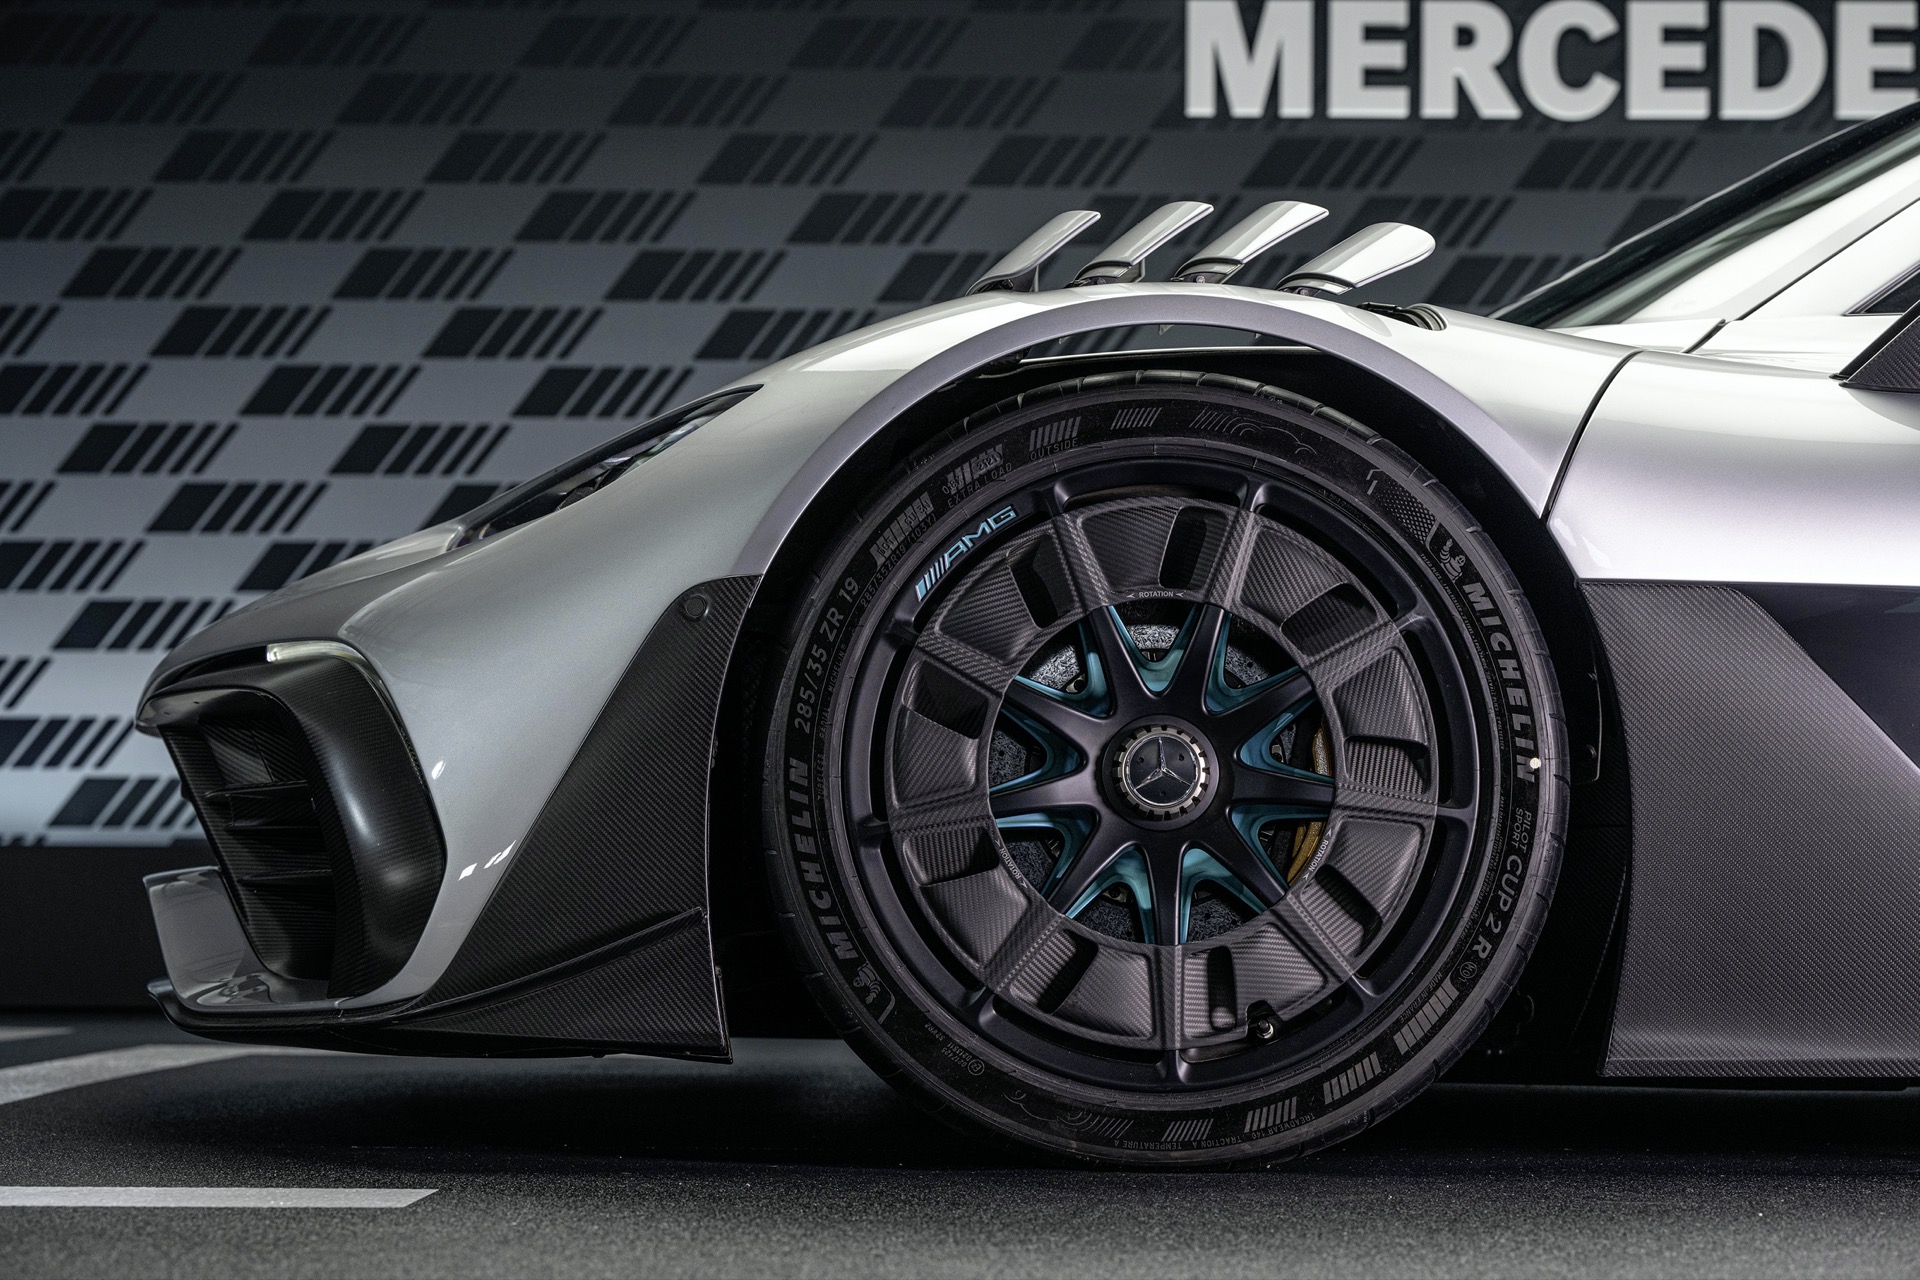 Der Neue Mercedes Amg One: Formel 1 Technologie Für Die Straße The New Mercedes Amg One: Formula 1 Technology For The Road